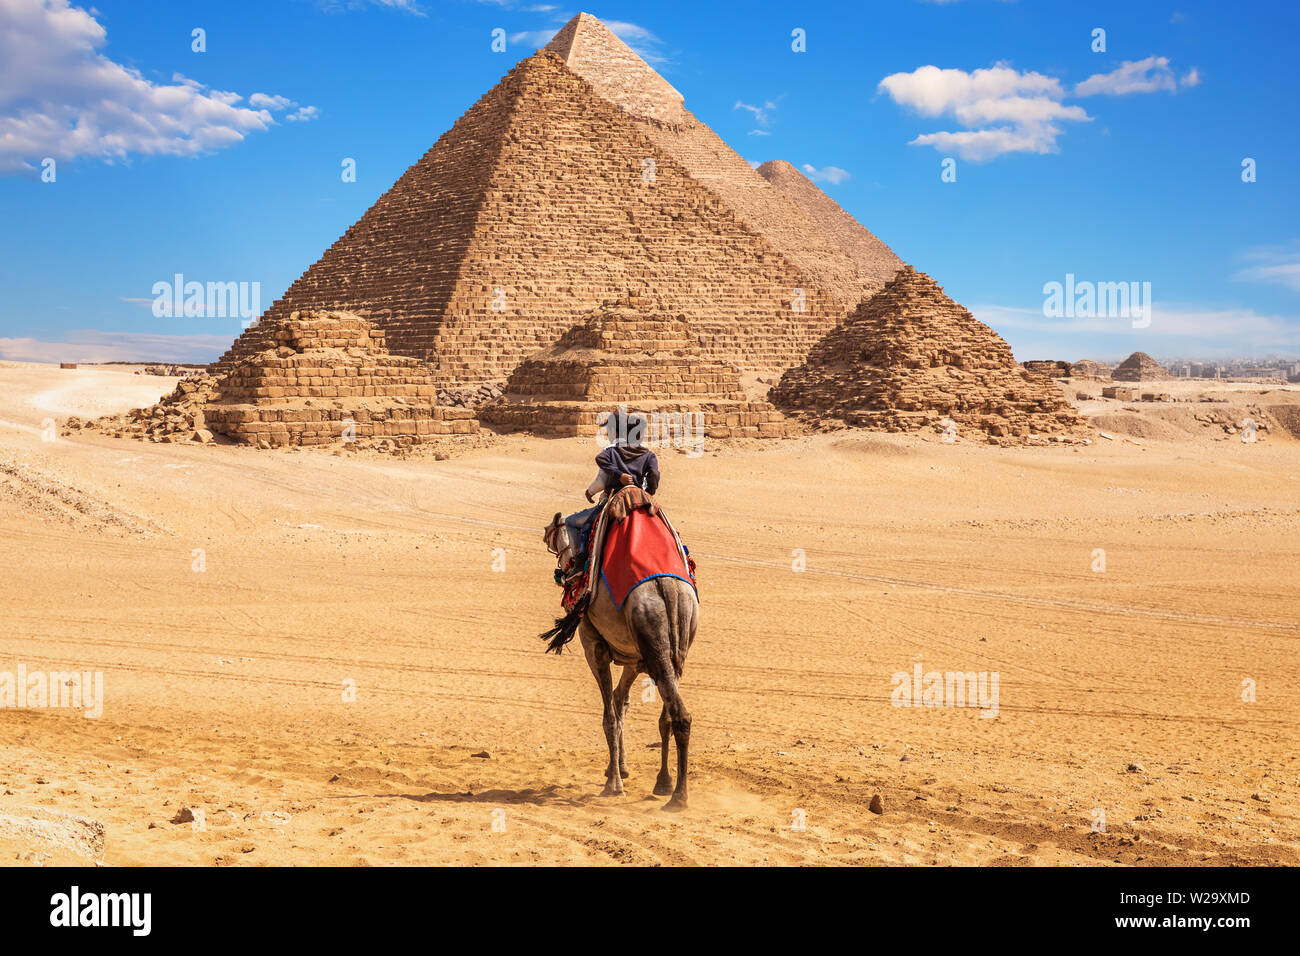 Los egipcios en camellos, cerca del complejo de las pirámides de Giza, Egipto Foto de stock